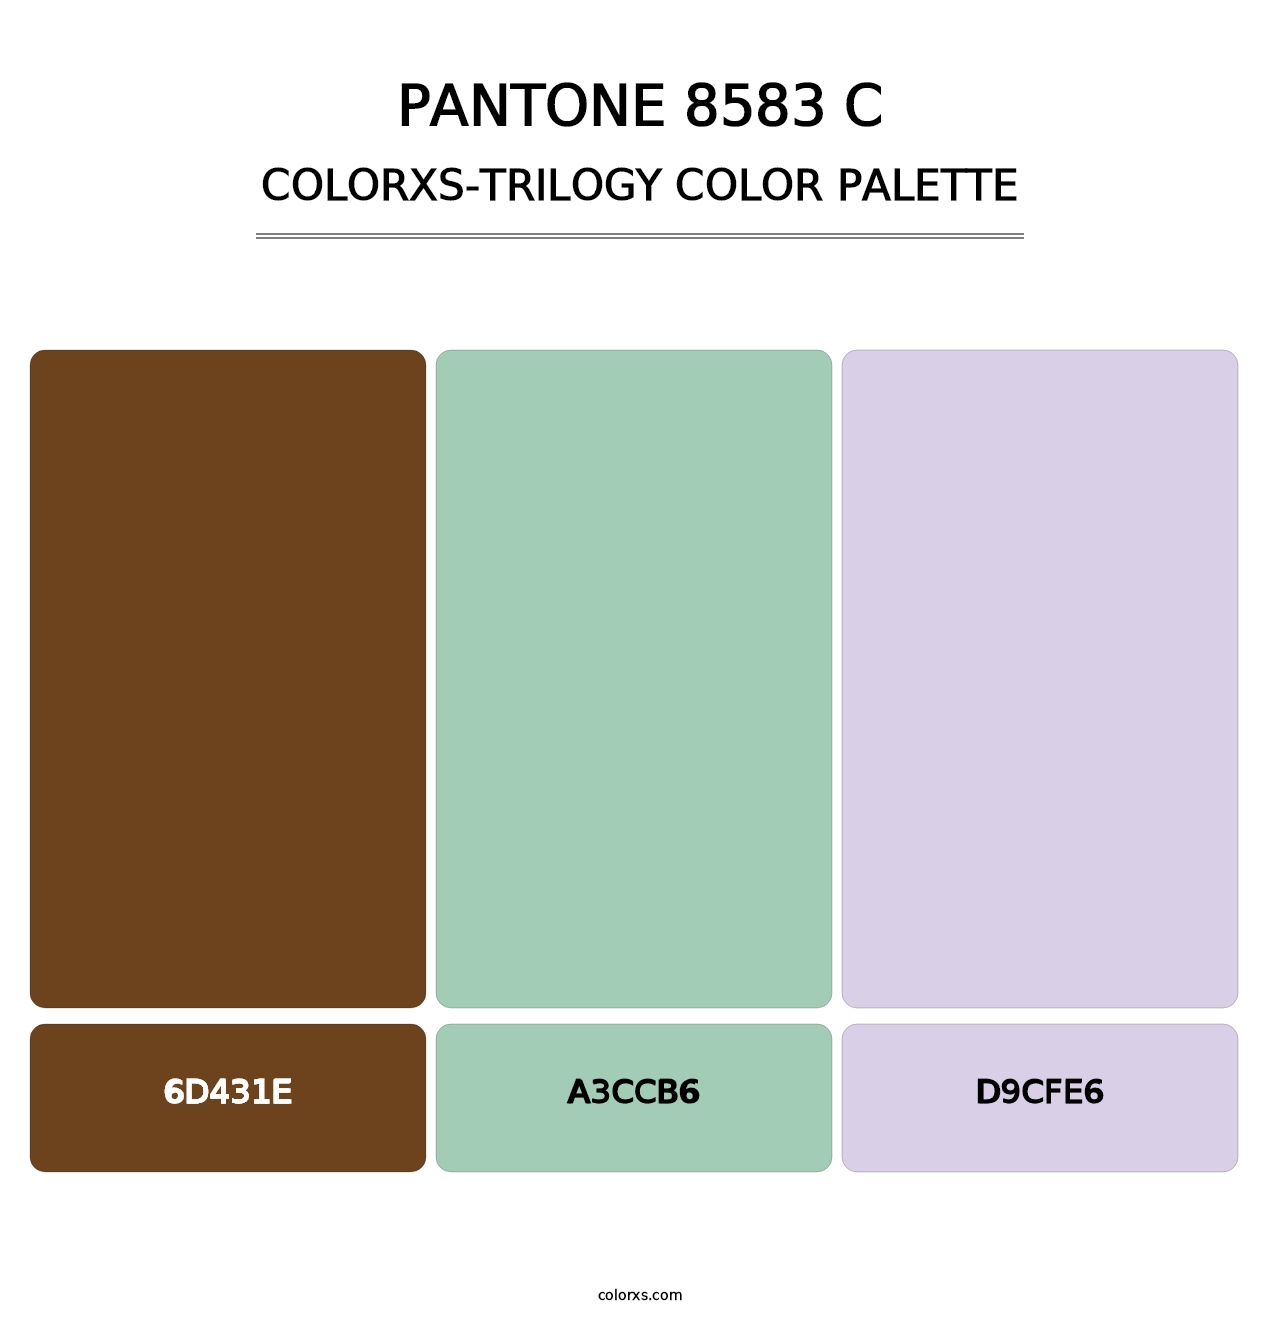 PANTONE 8583 C - Colorxs Trilogy Palette